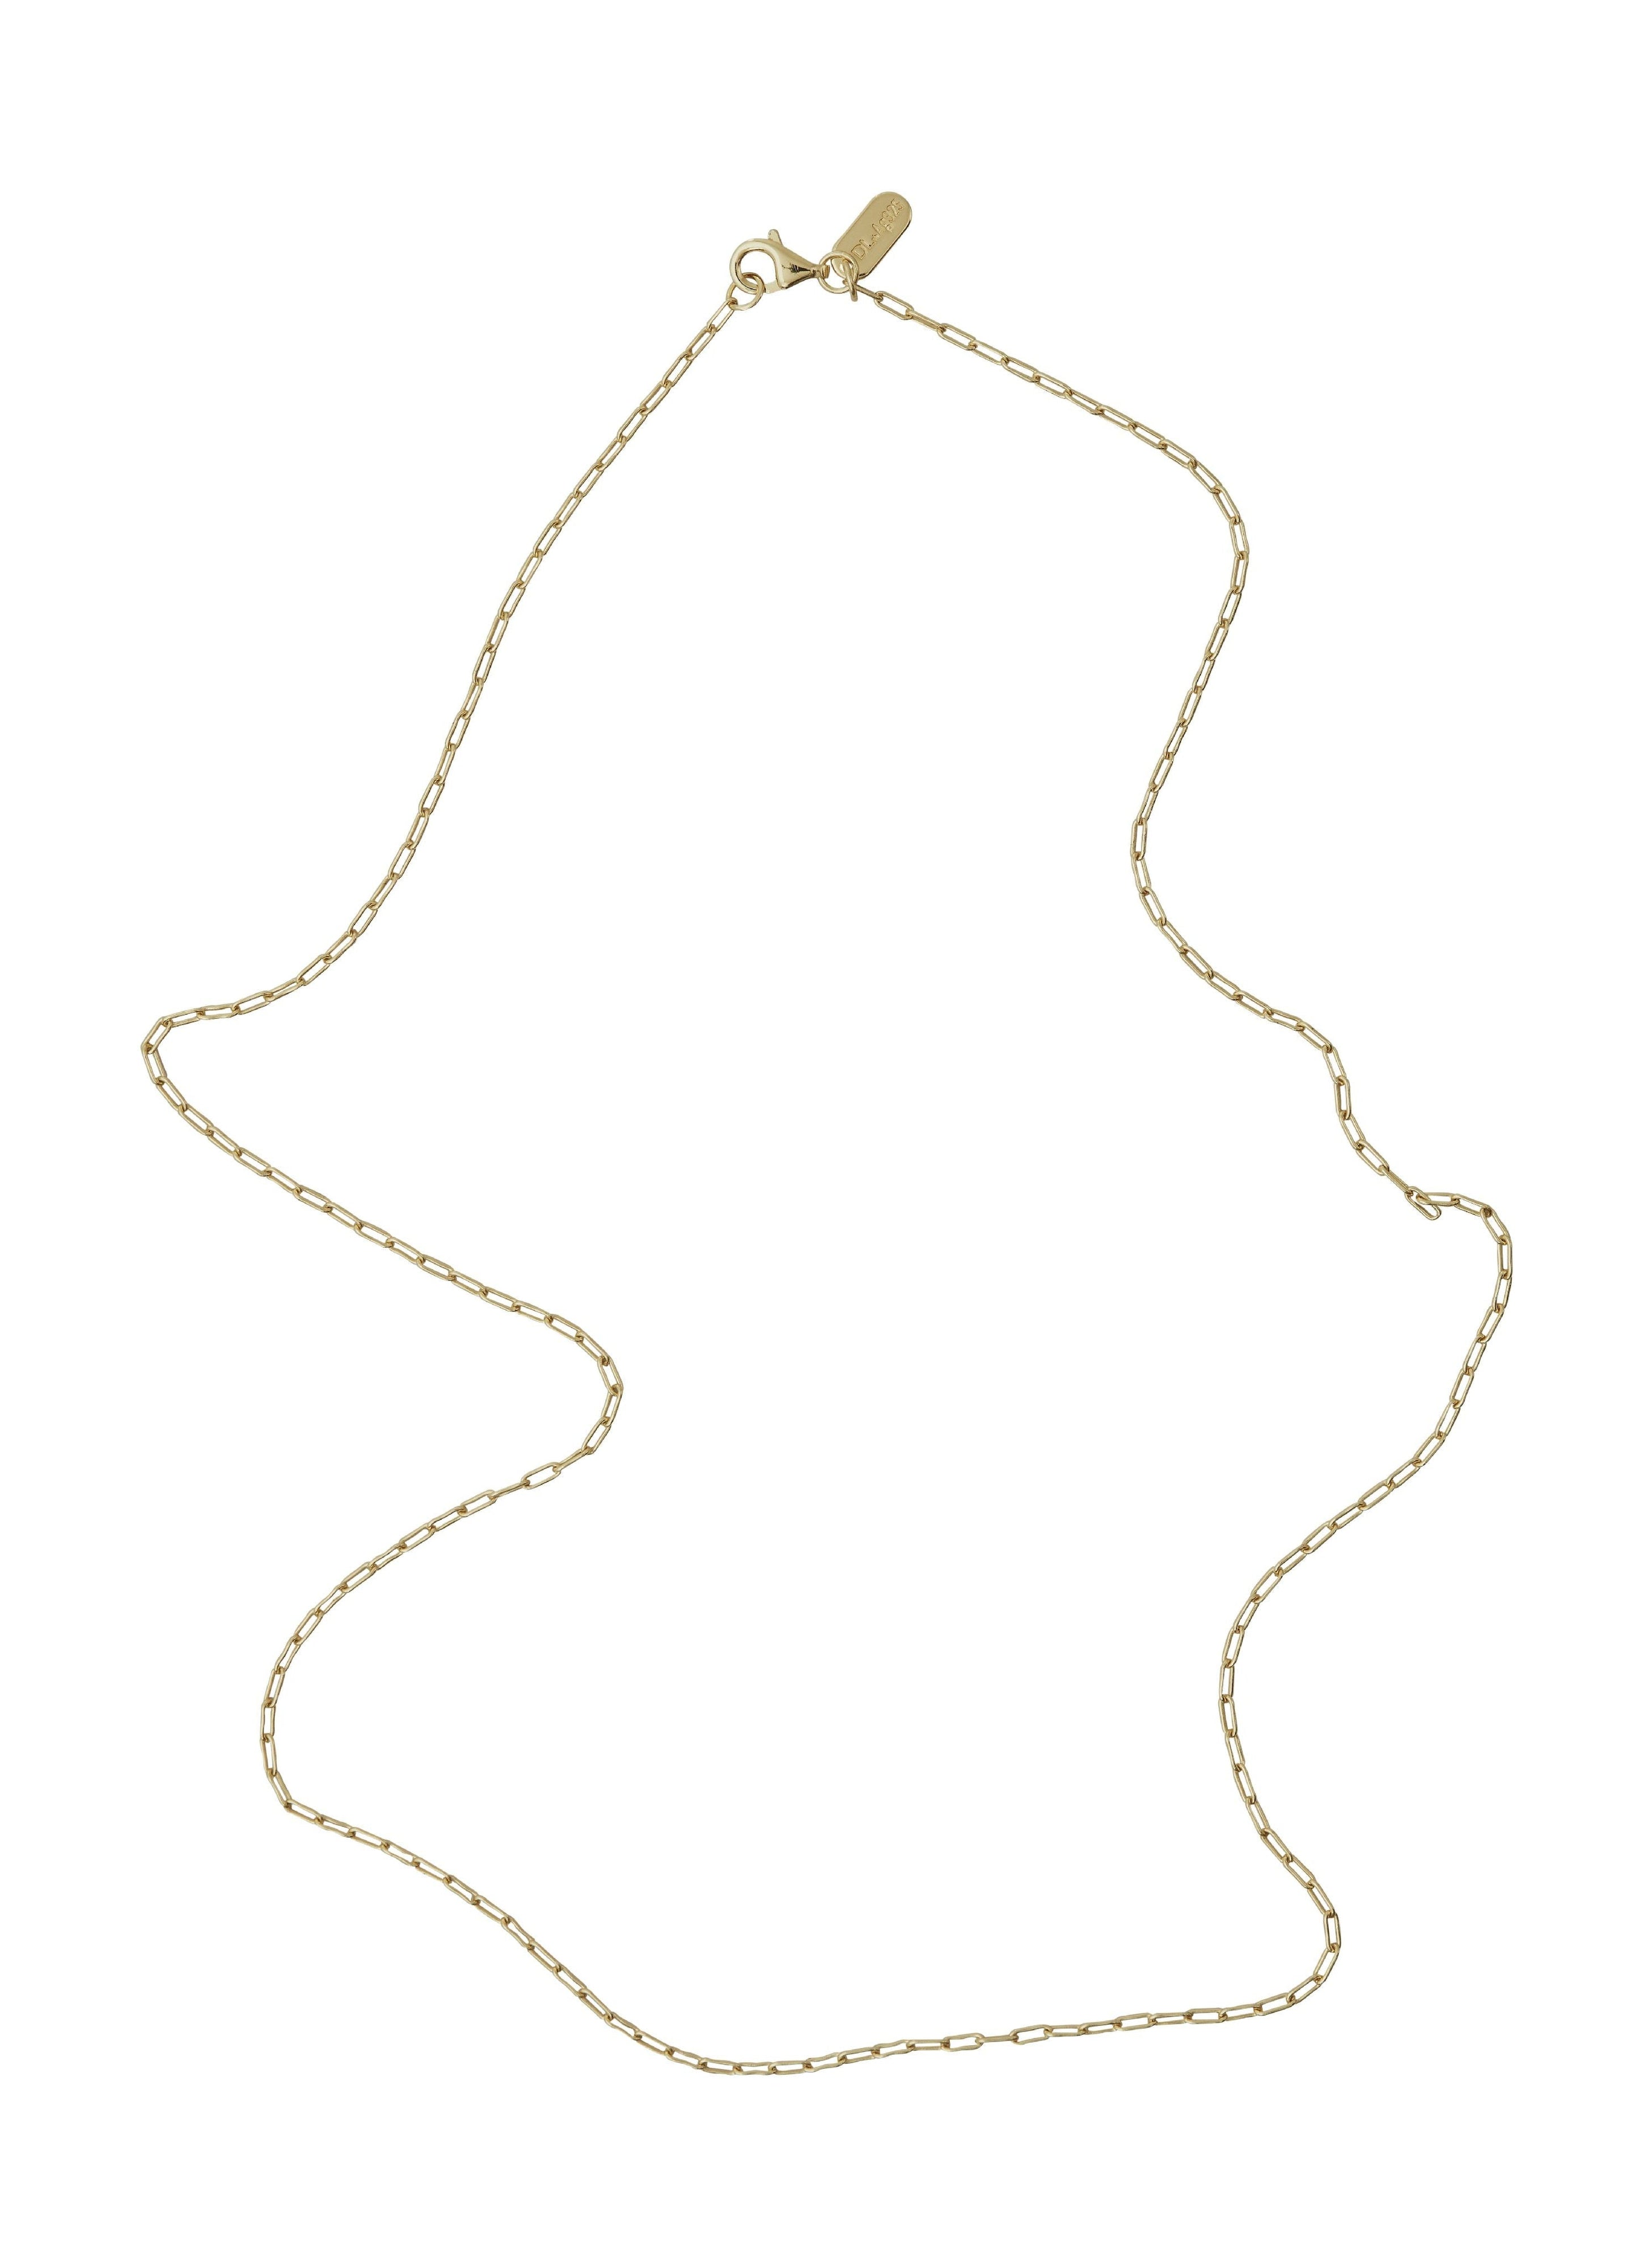 Designbuchstaben quadratische Verknüpfungskette Gold, 60 cm